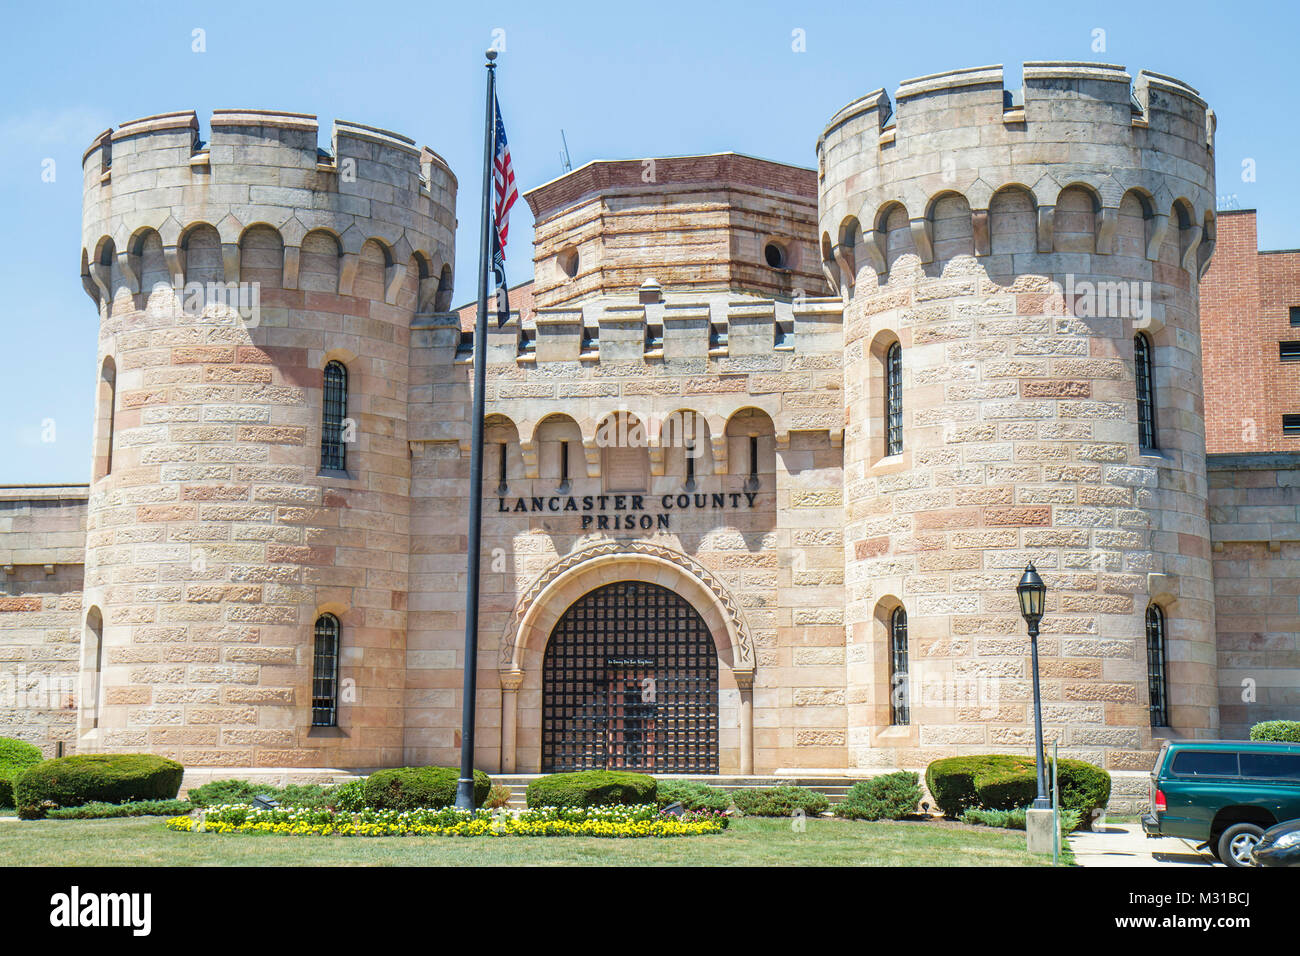 Pennsylvania,PA,Northeastern,Lancaster,Lancaster County Prison,edificio in stile medievale,architettura insolita,castello,replica,incarcerato,punizione,pene Foto Stock